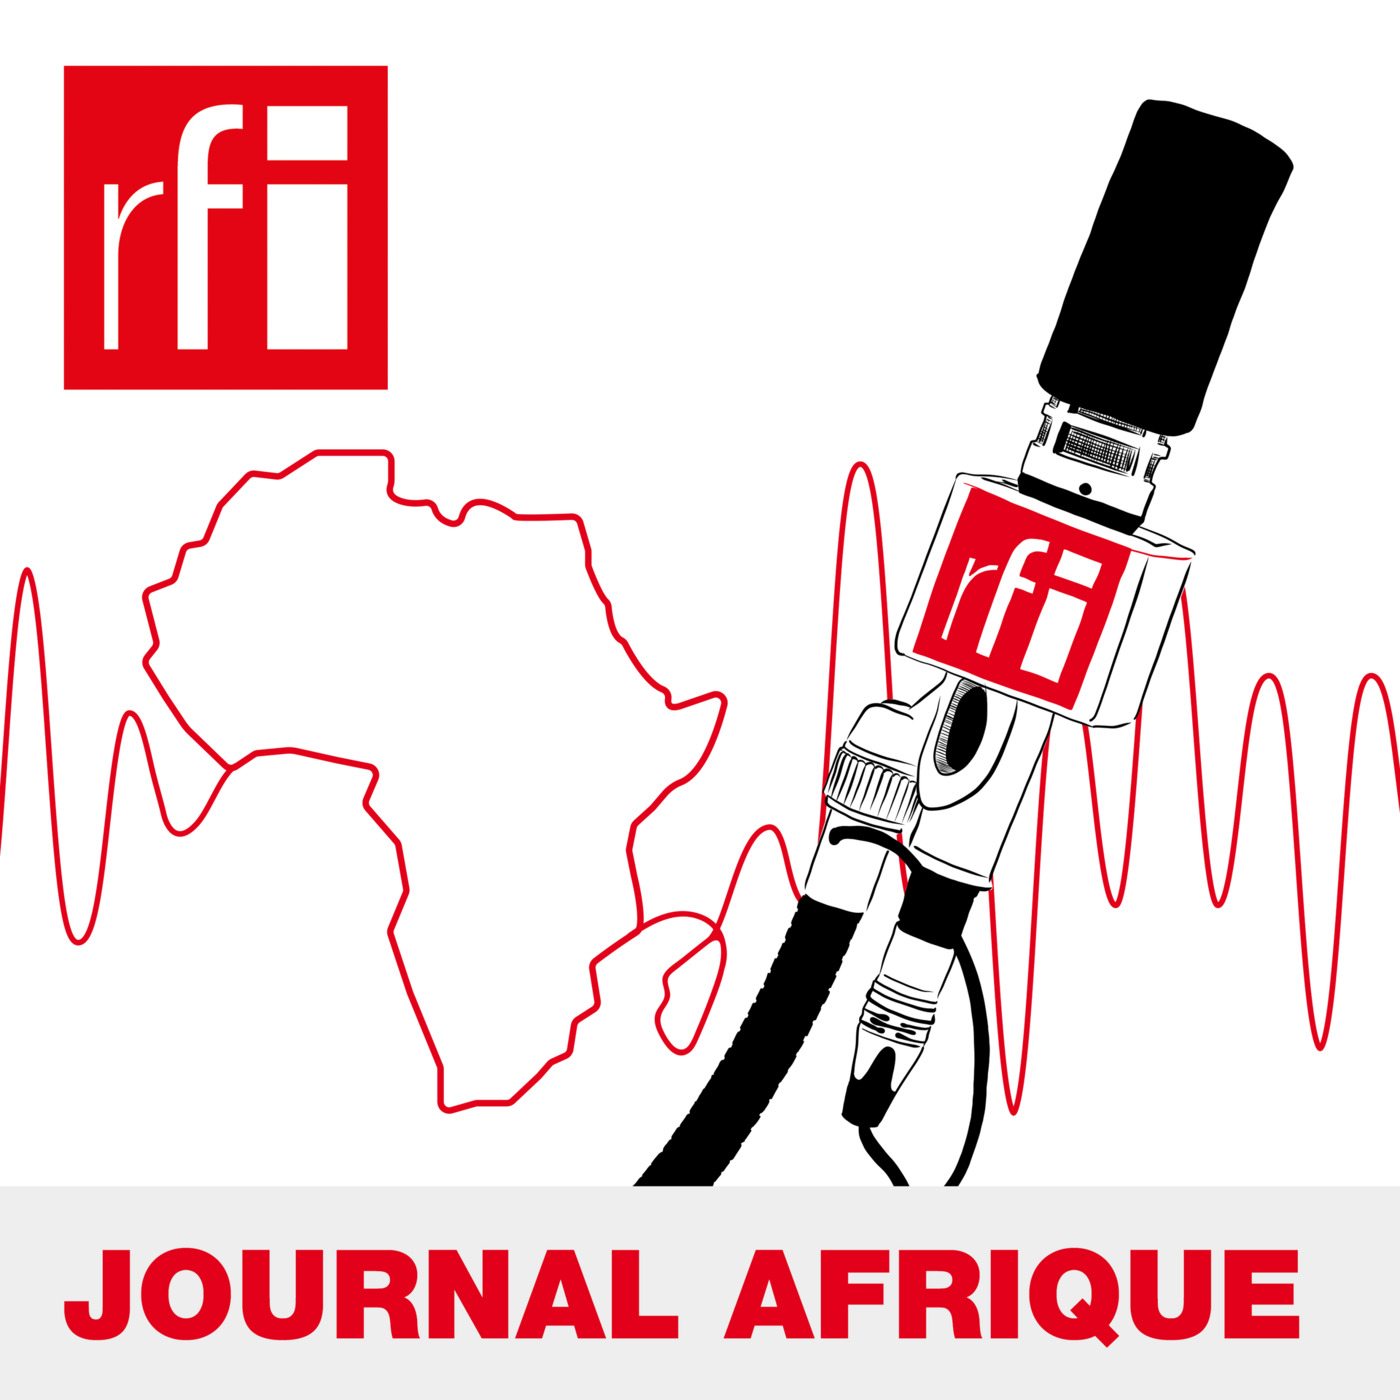 Le gouvernement burkinabè suspend la diffusion des programmes de la RFI accusée de propos mensongers